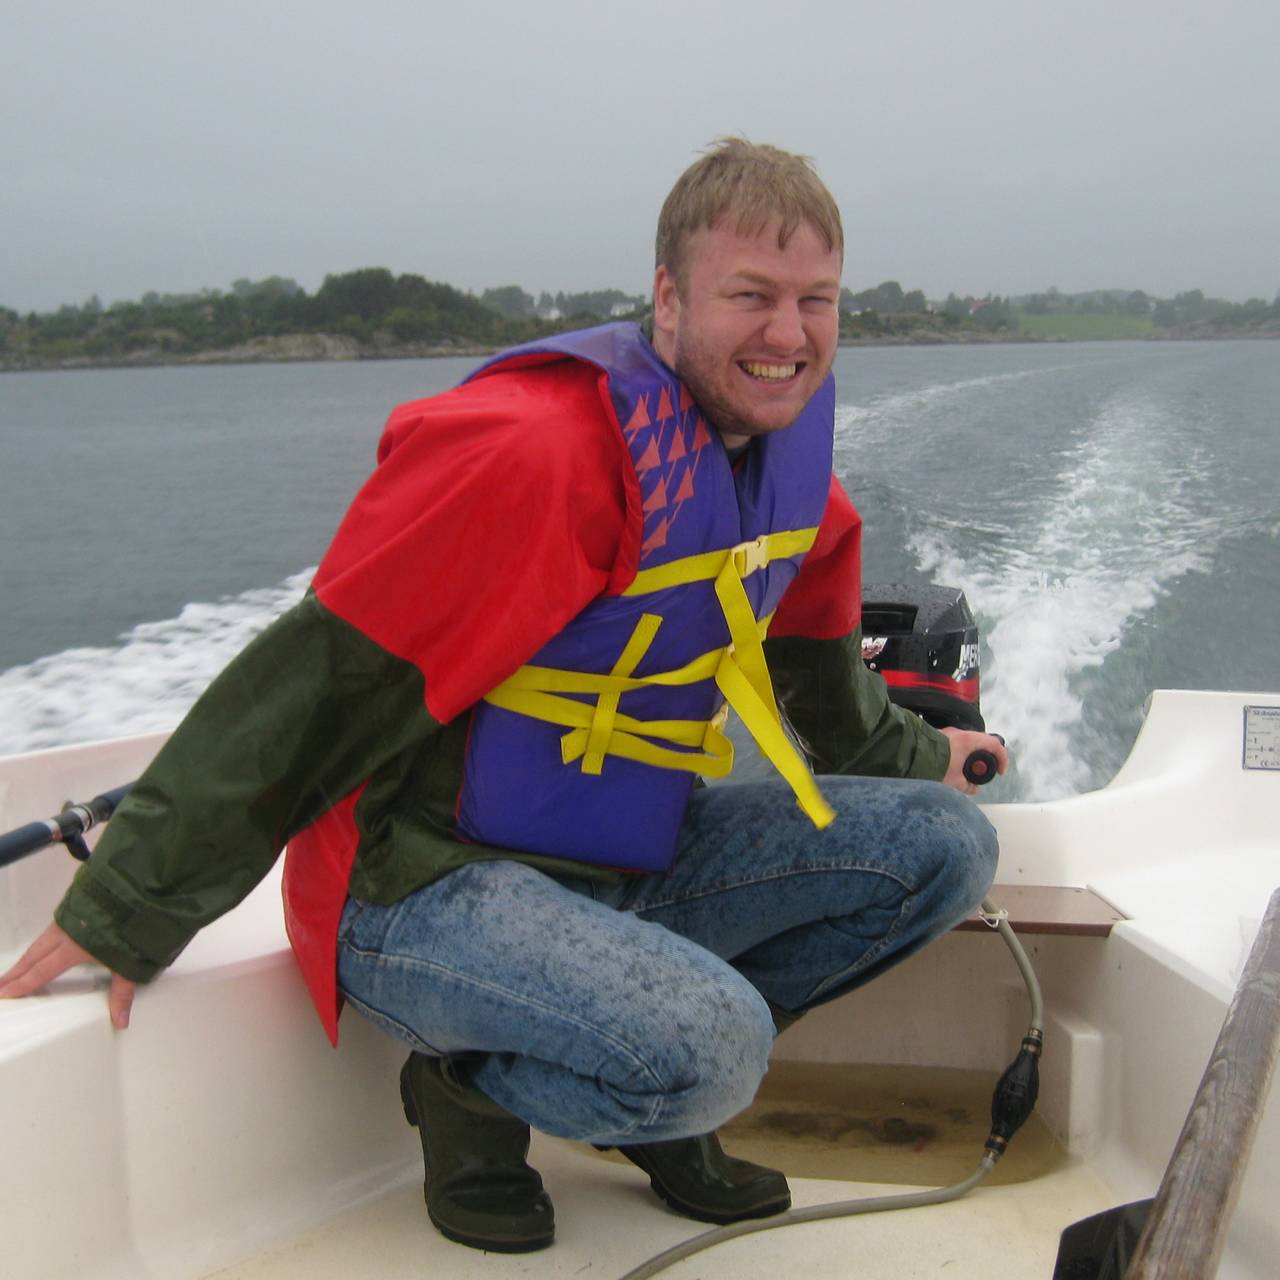 Ole Johnny Broholt Bakke sitter i en båt med flytevest og smiler til kamera